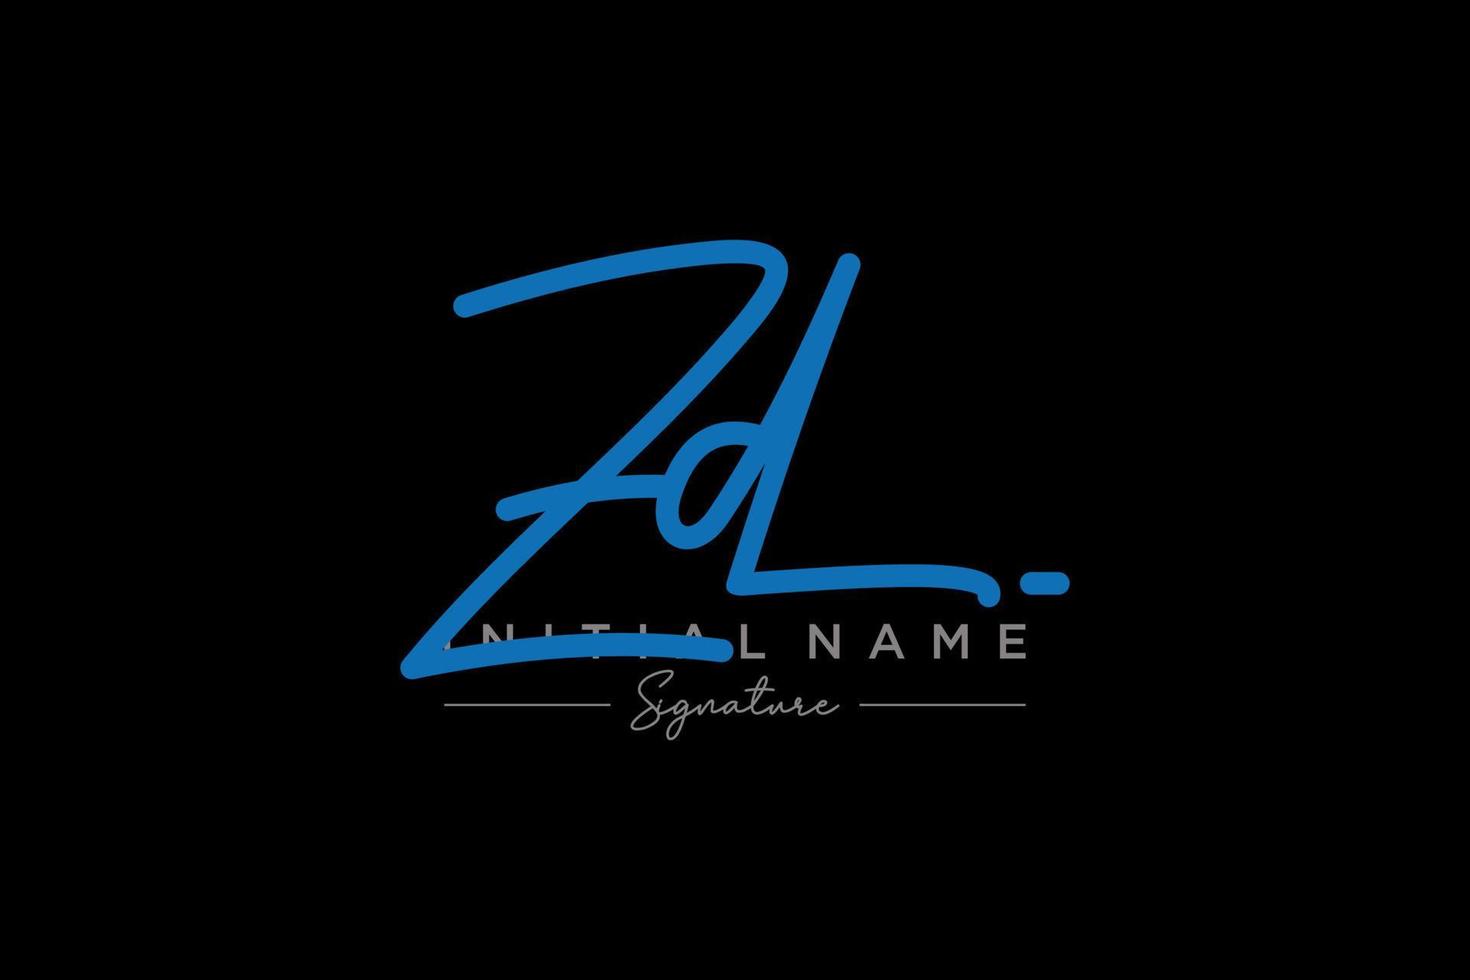 iniziale zd firma logo modello vettore. mano disegnato calligrafia lettering vettore illustrazione.